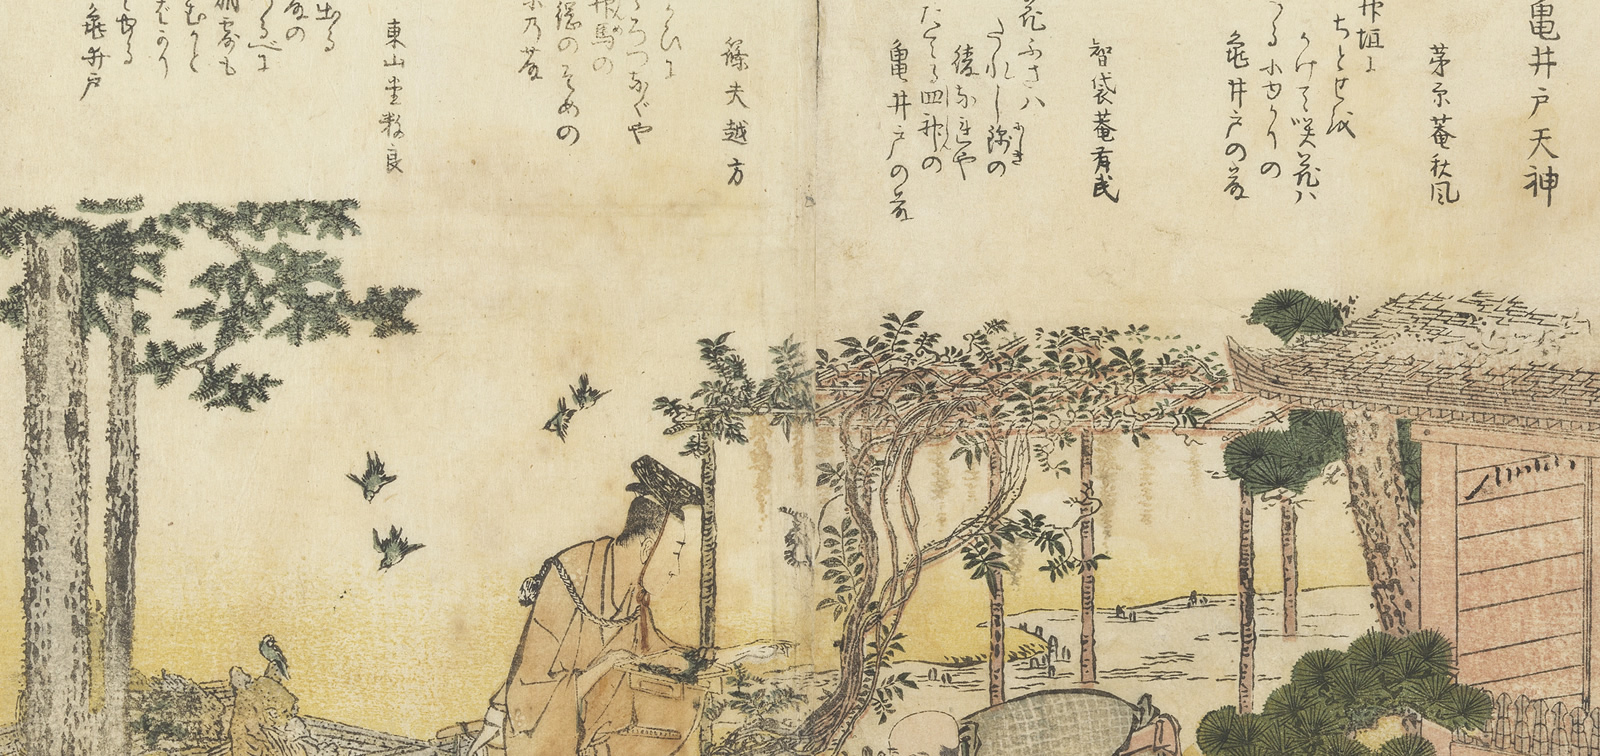 Japanese Prints in the Museo del Prado